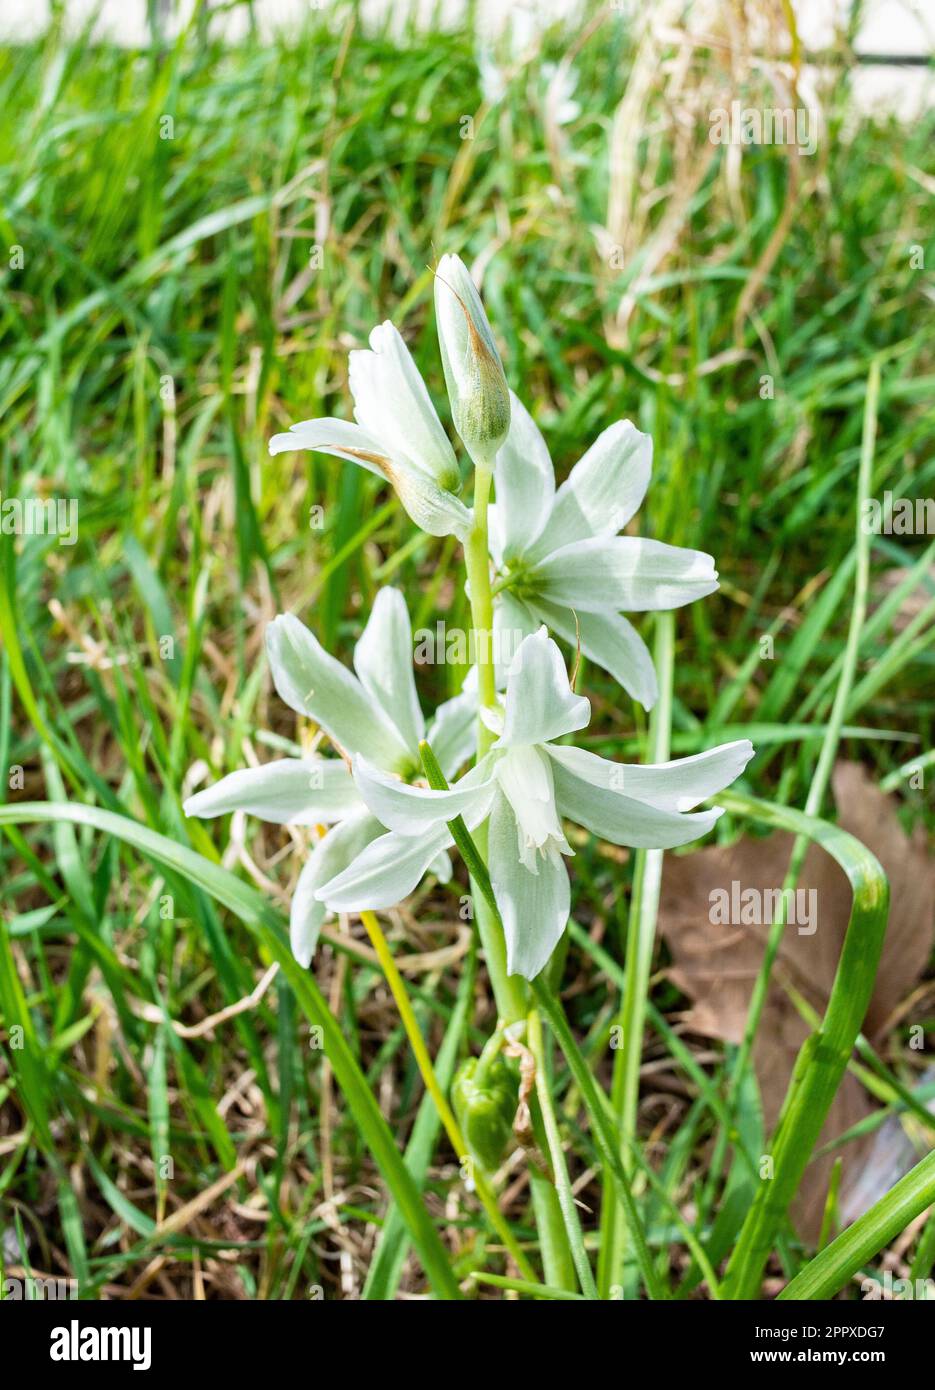 Ornithogalum nutans, connu sous le nom de drooping star-of-Bethlehem[2], est une espèce de plante à fleurs de la famille des Asparagaceae, originaire d'Europe et du Sud-nous Banque D'Images